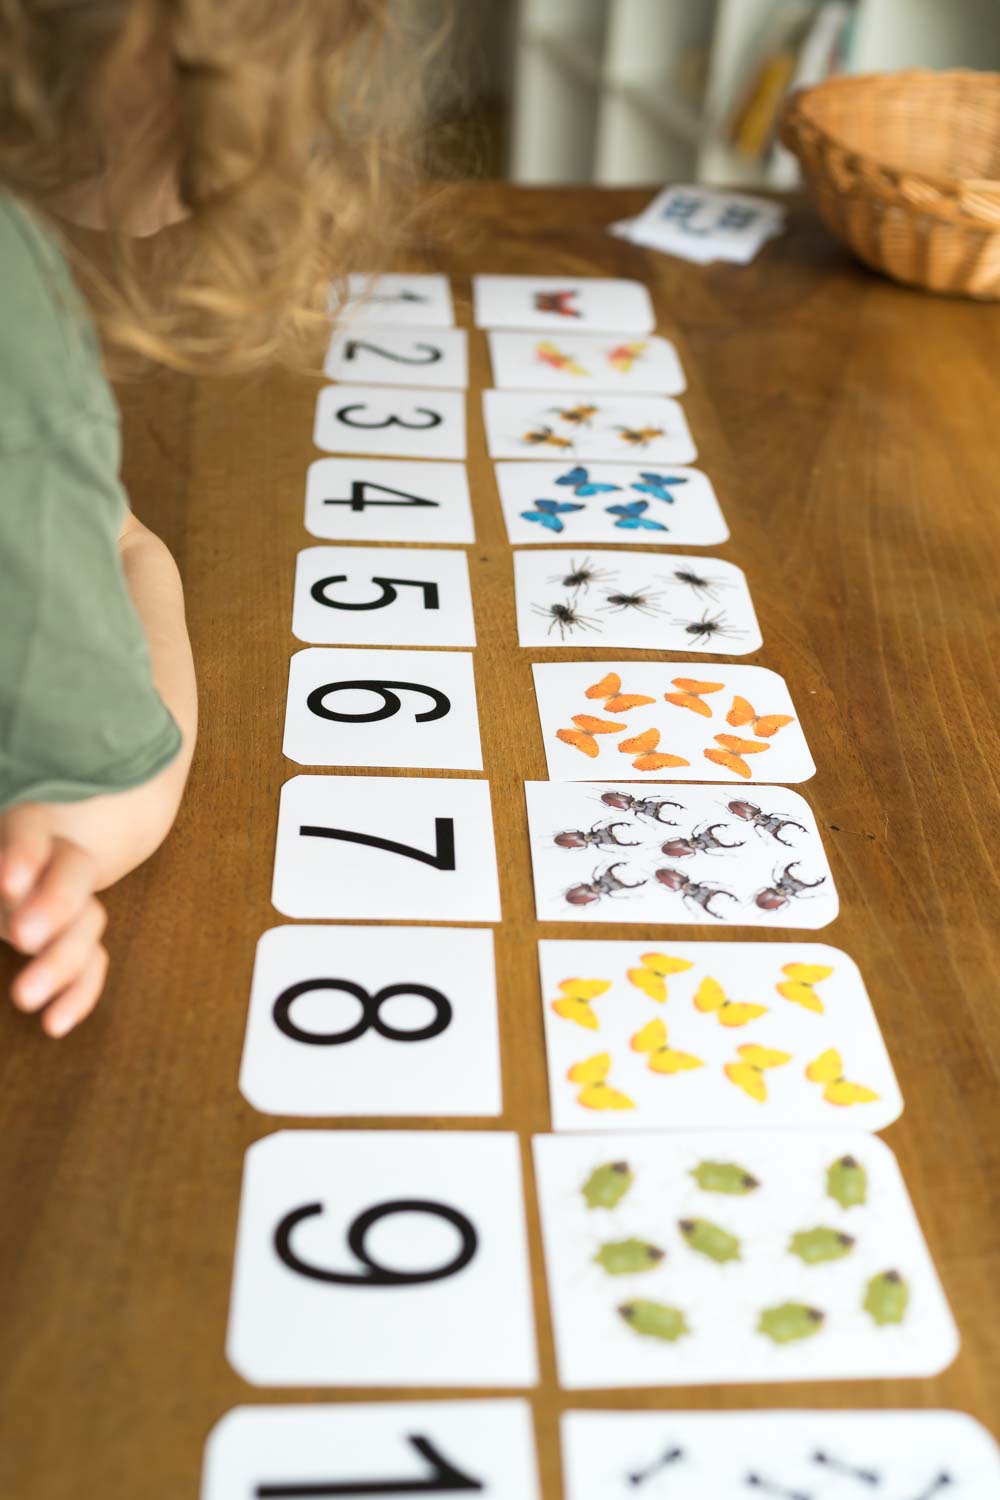 Druckvorlage Zahlen lernen • 7 Spielideen für Kinder und Kleinkinder • Spielerisch zählen lernen ✓ Jetzt Abo lösen & Spielideen downloaden